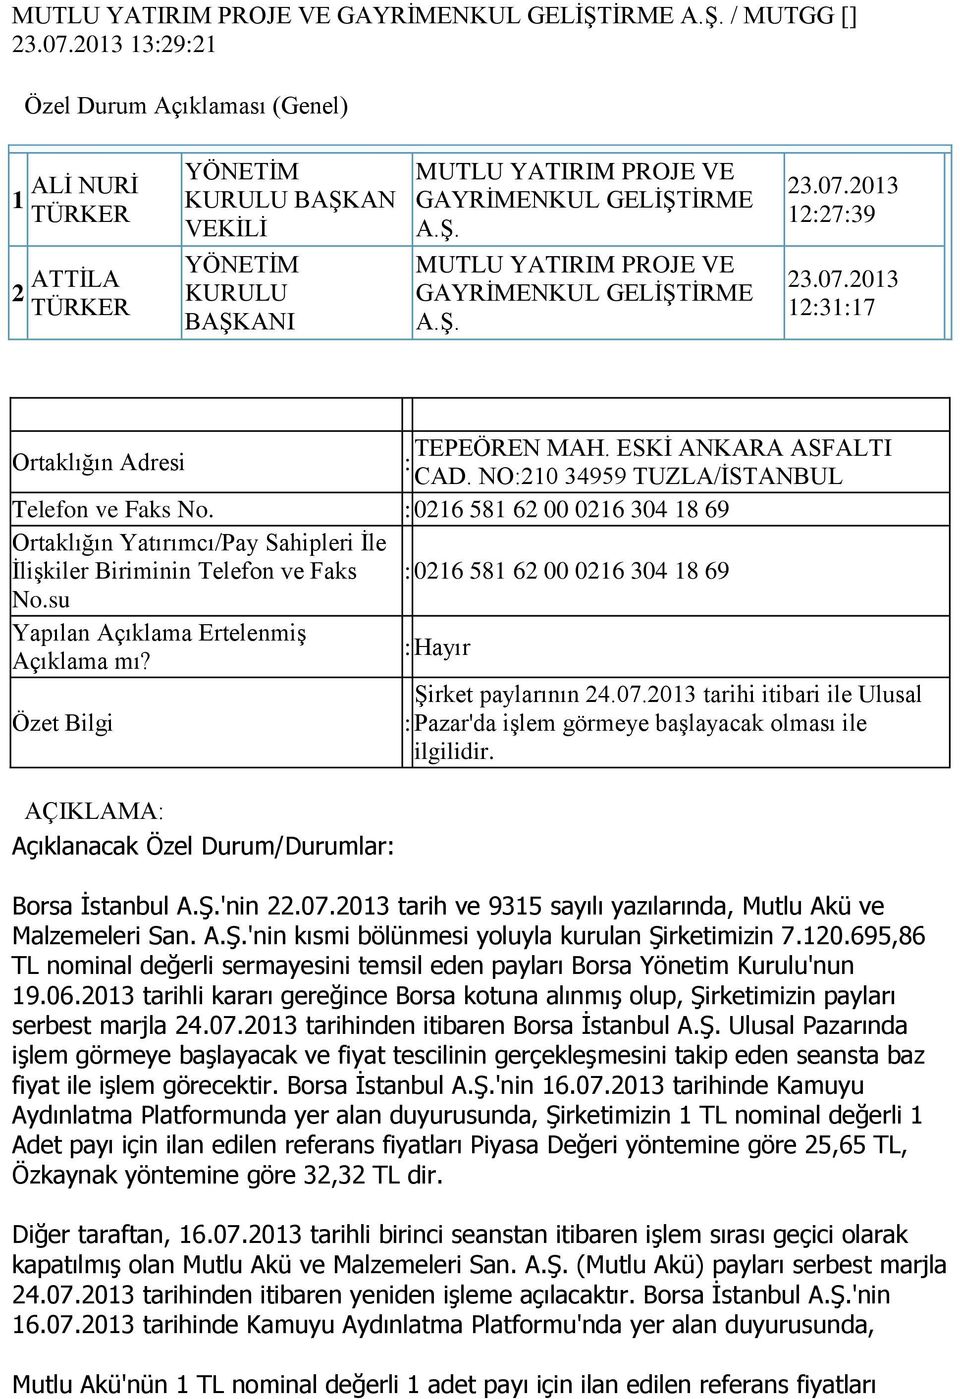 Şirket paylarının 24.07.2013 tarihi itibari ile Ulusal Özet Bilgi Pazar'da işlem görmeye başlayacak olması ile ilgilidir. AÇIKLAMA Açıklanacak Özel Durum/Durumlar Borsa İstanbul 'nin 22.07.2013 tarih ve 9315 sayılı yazılarında, Mutlu Akü ve Malzemeleri San.